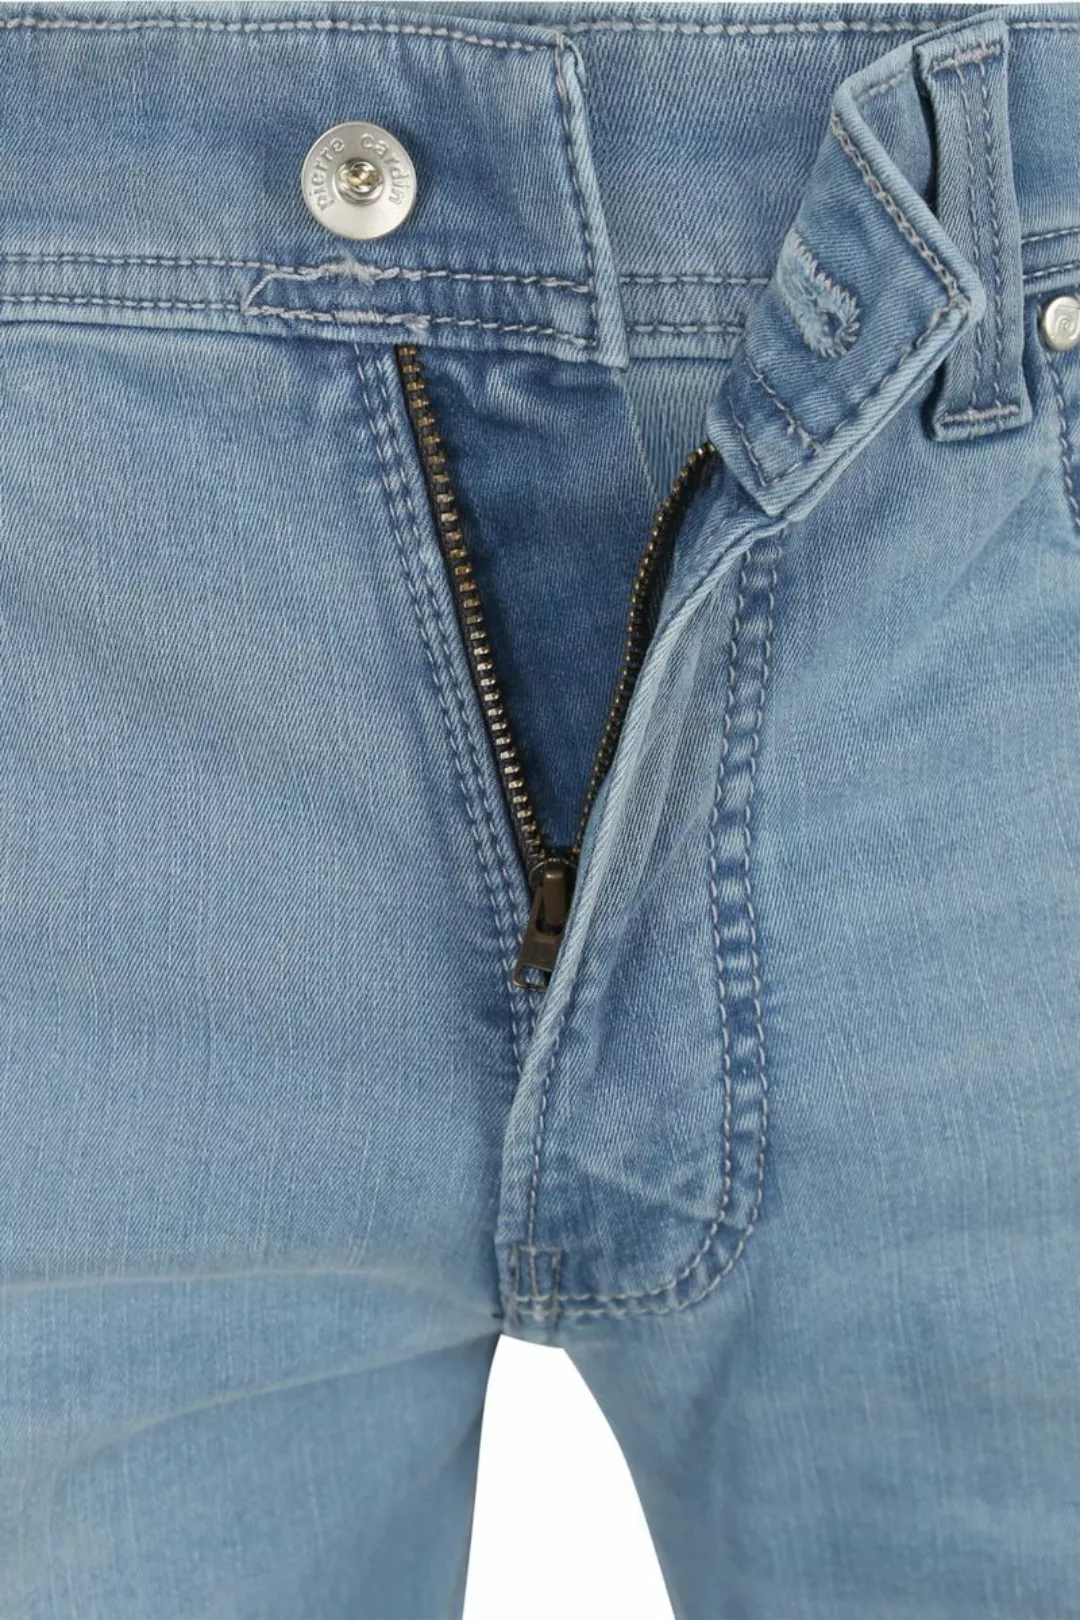 Pierre Cardin Jeans Lyon Tapered Future Flex Hellblau  - Größe W 36 - L 34 günstig online kaufen